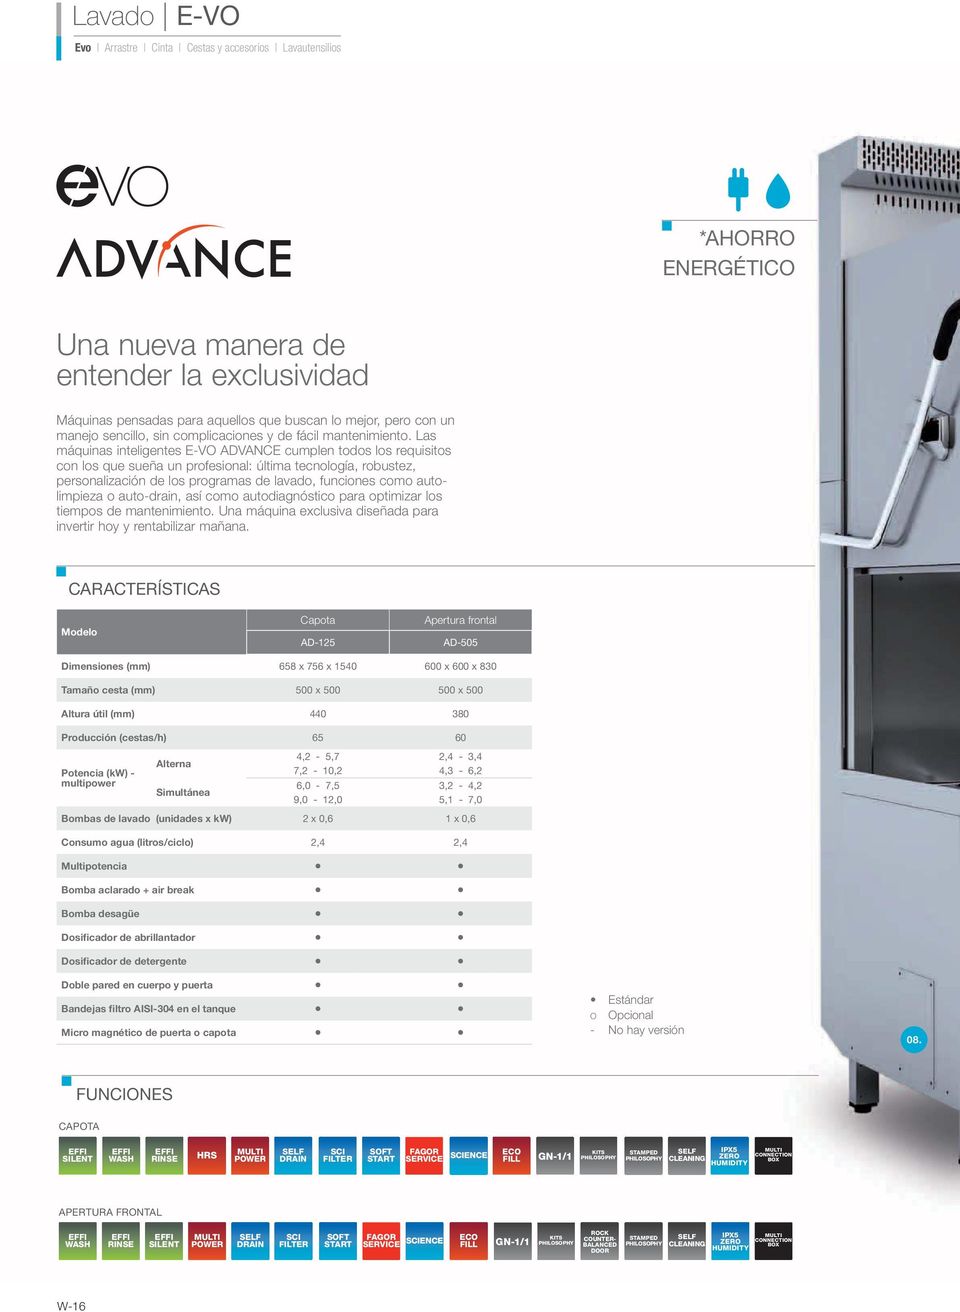 Las máquinas inteligentes E-VO ADVANCE cumplen todos los requisitos con los que sueña un profesional: última tecnología, robustez, personalización de los programas de lavado, funciones como